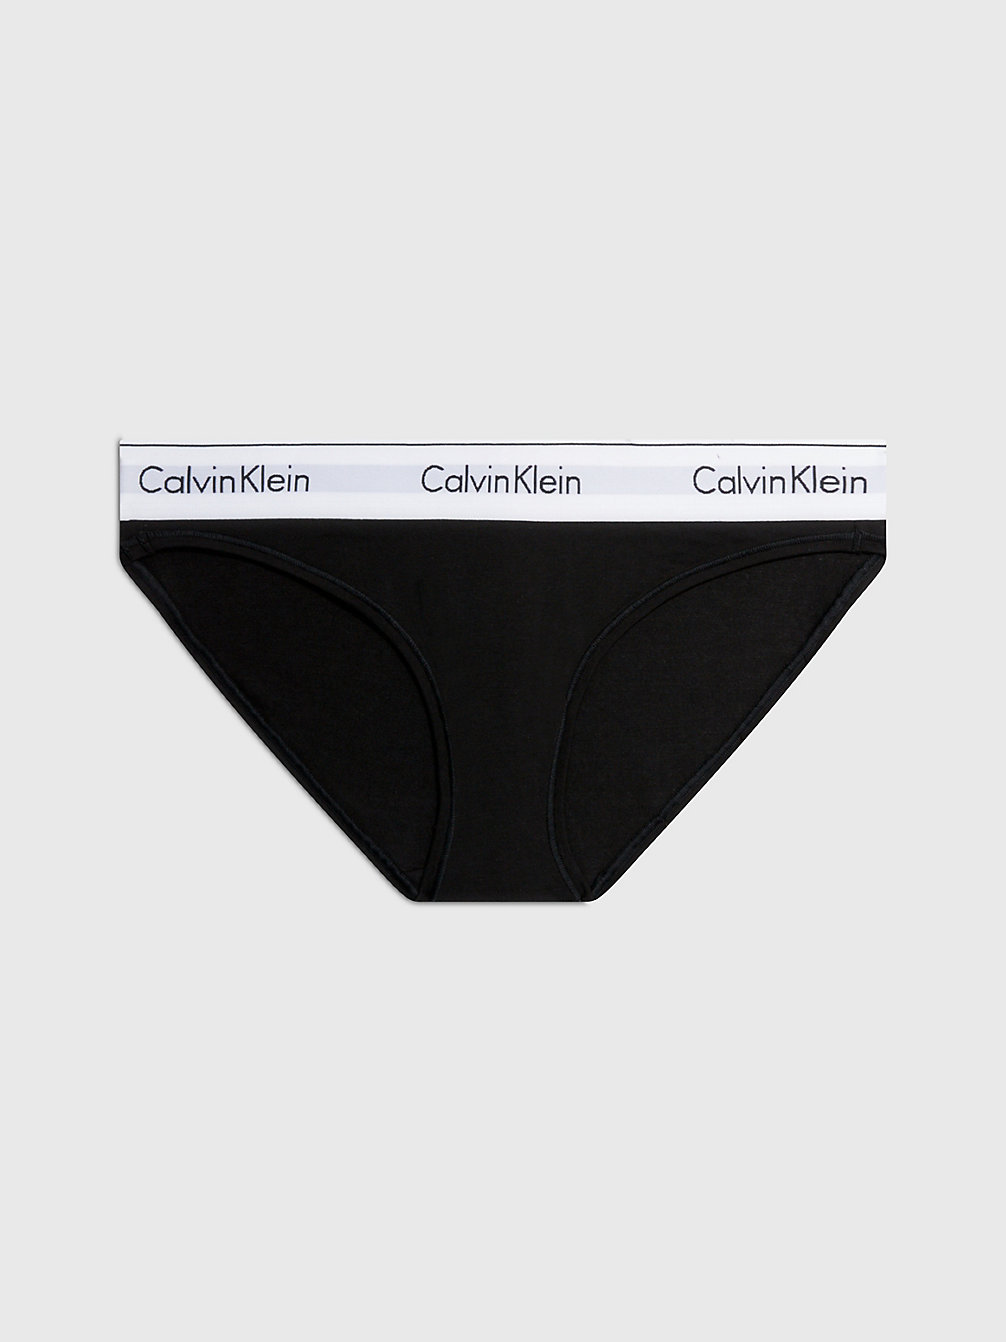 Culotte - Modern Cotton > BLACK > undefined femmes > Calvin Klein